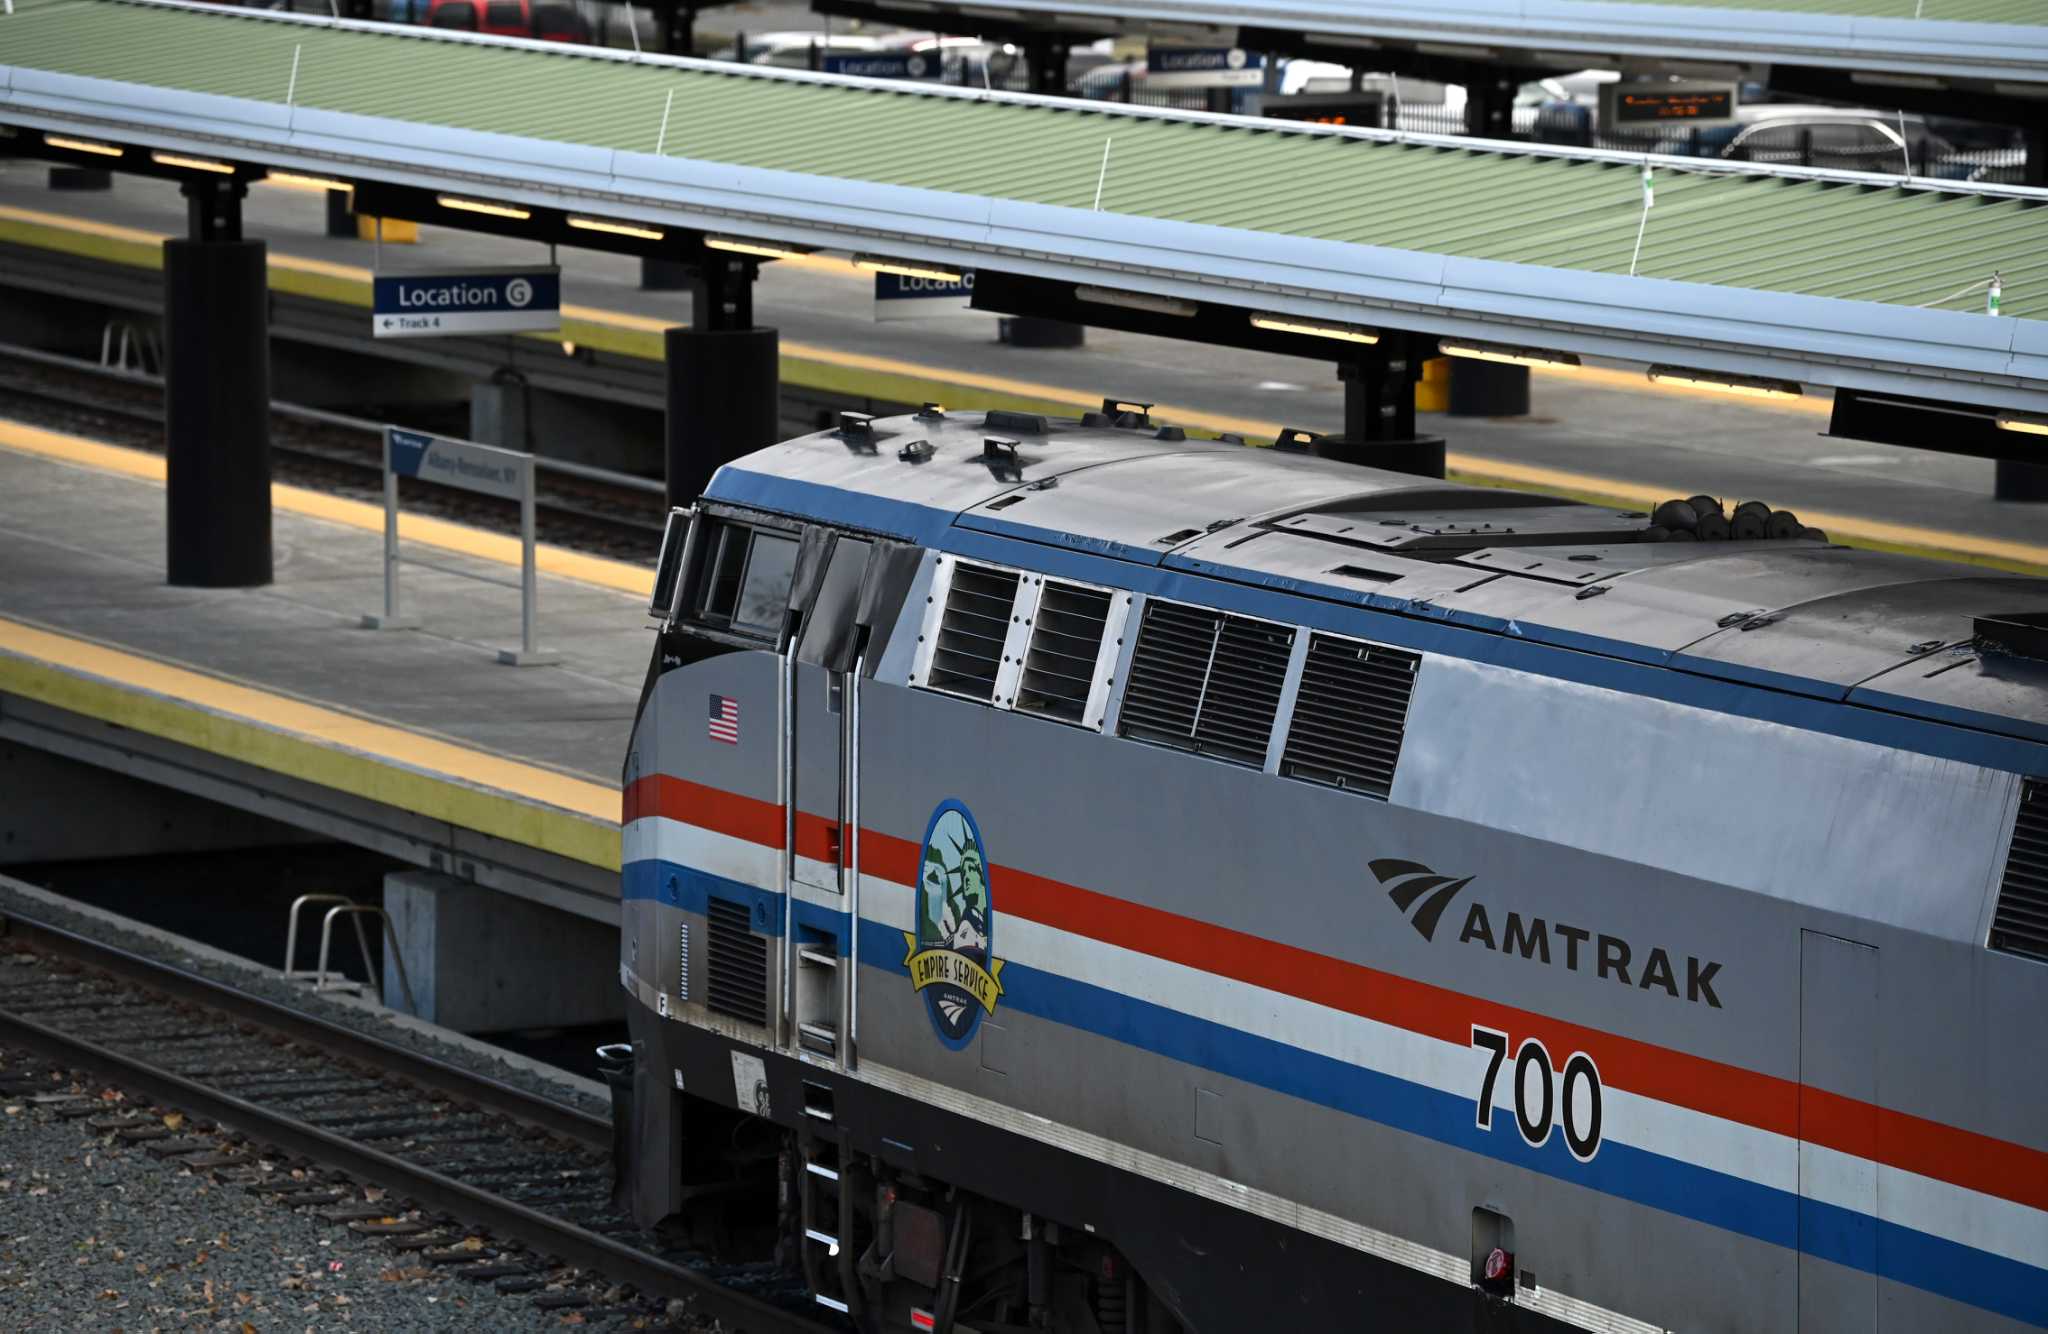 Amtrak dice que el servicio directo a Nueva York regresará parcialmente el jueves